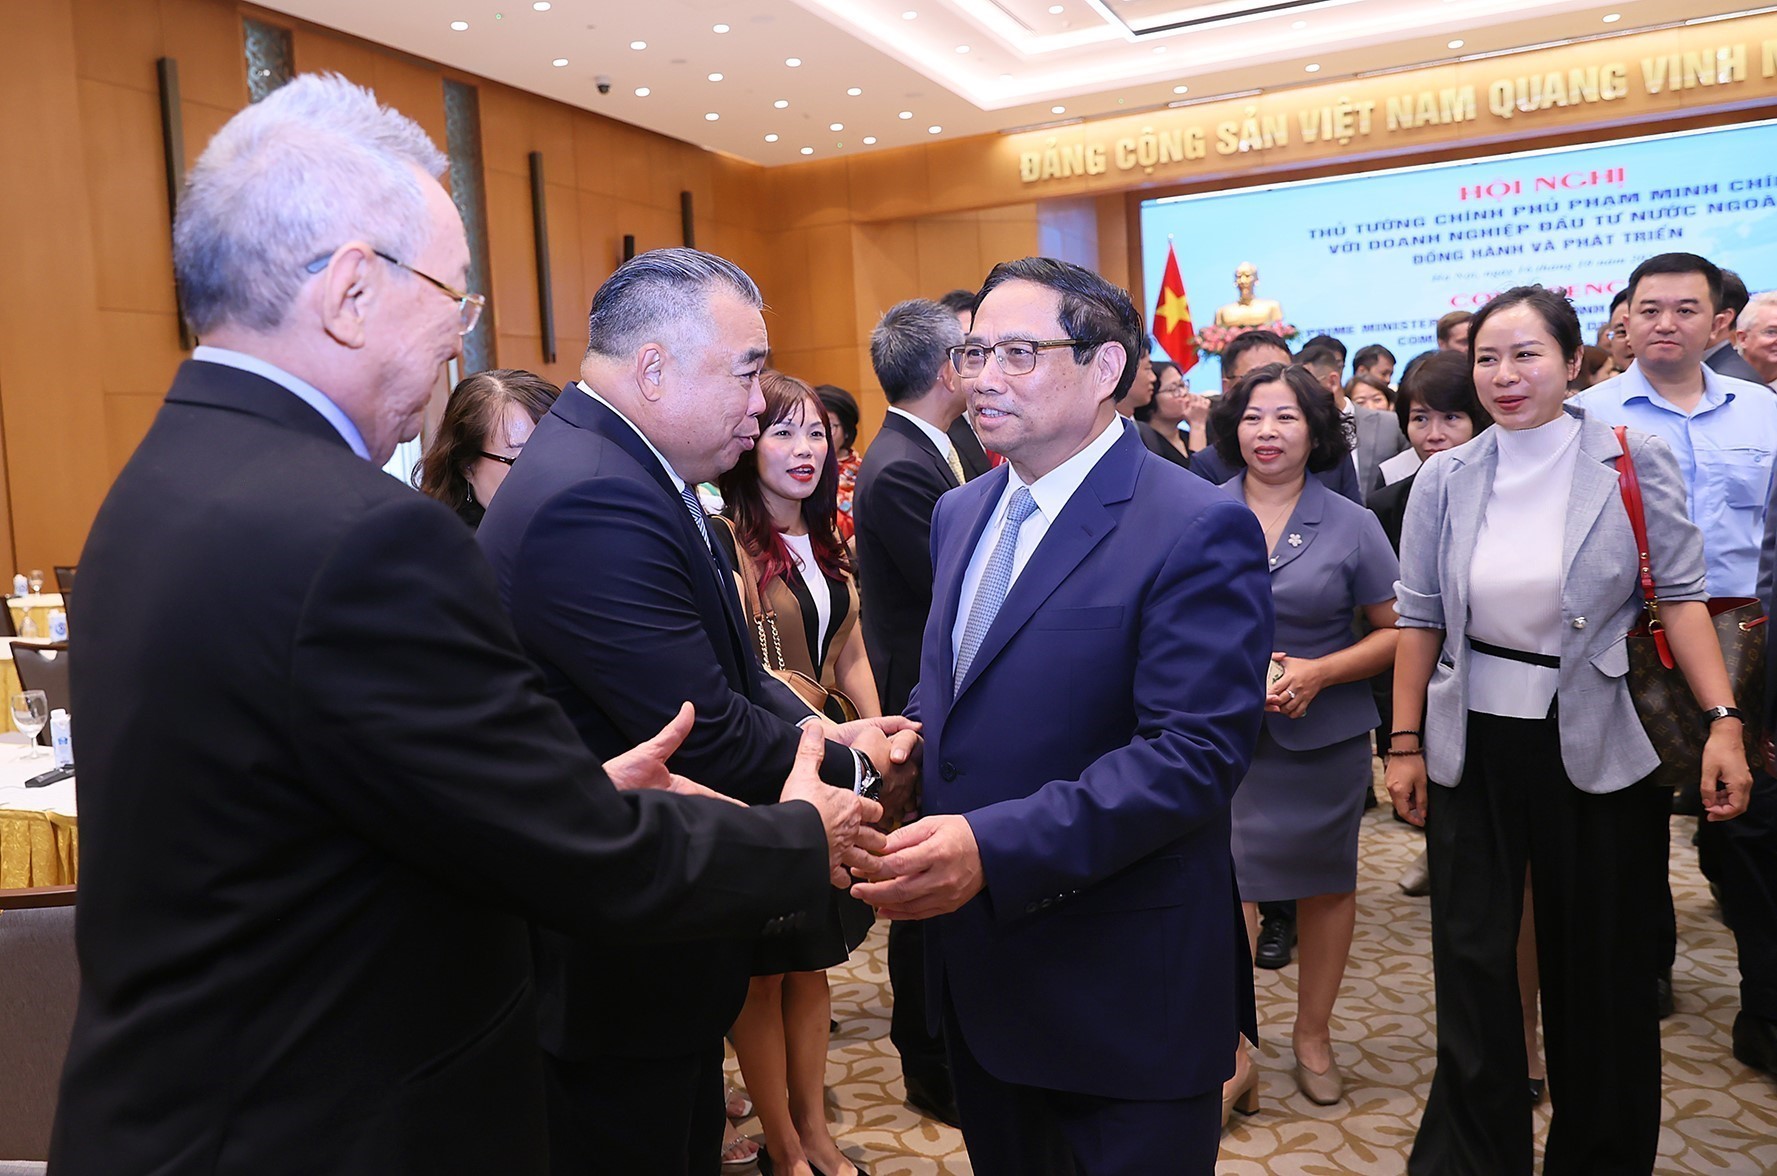 Định hướng xây dựng nền kinh tế độc lập, tự chủ và hội nhập quốc tế toàn diện, sâu rộng trong bối cảnh mới ở Việt Nam